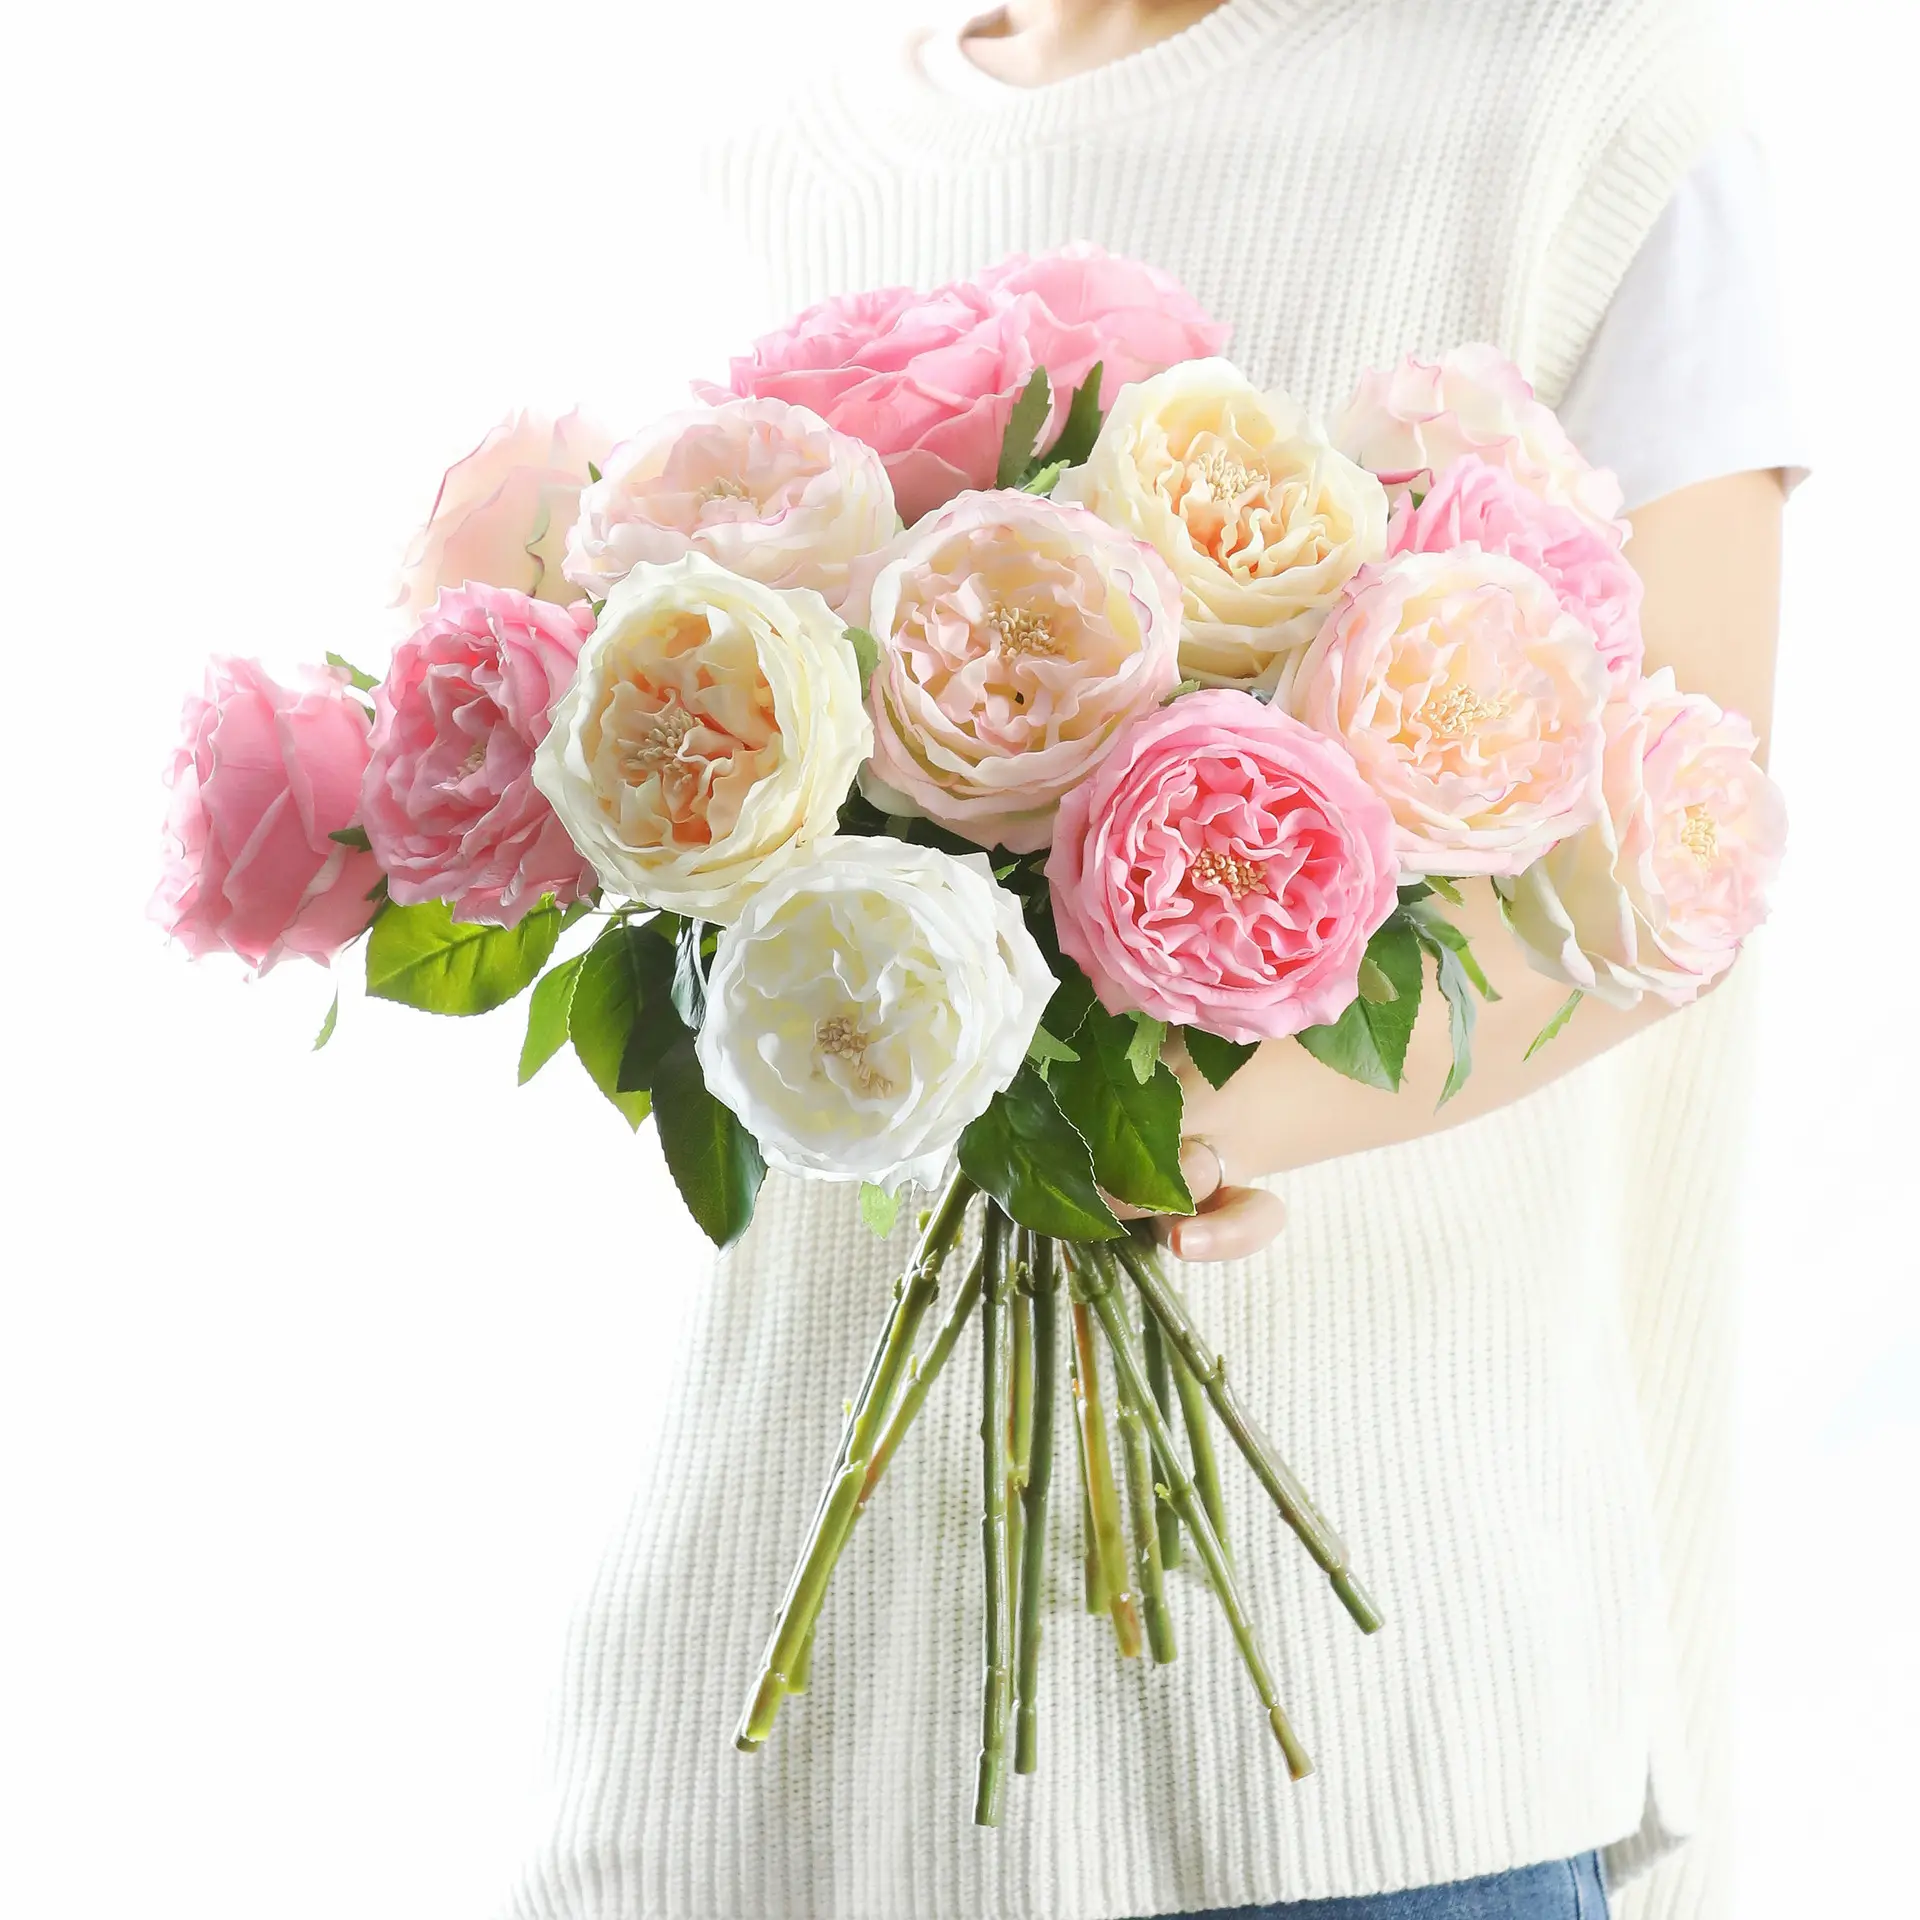 زهور ورد أوستن صناعية مرطبة مزينة بملمس عالي لزينة المنزل وحفلات الزفاف والديكور